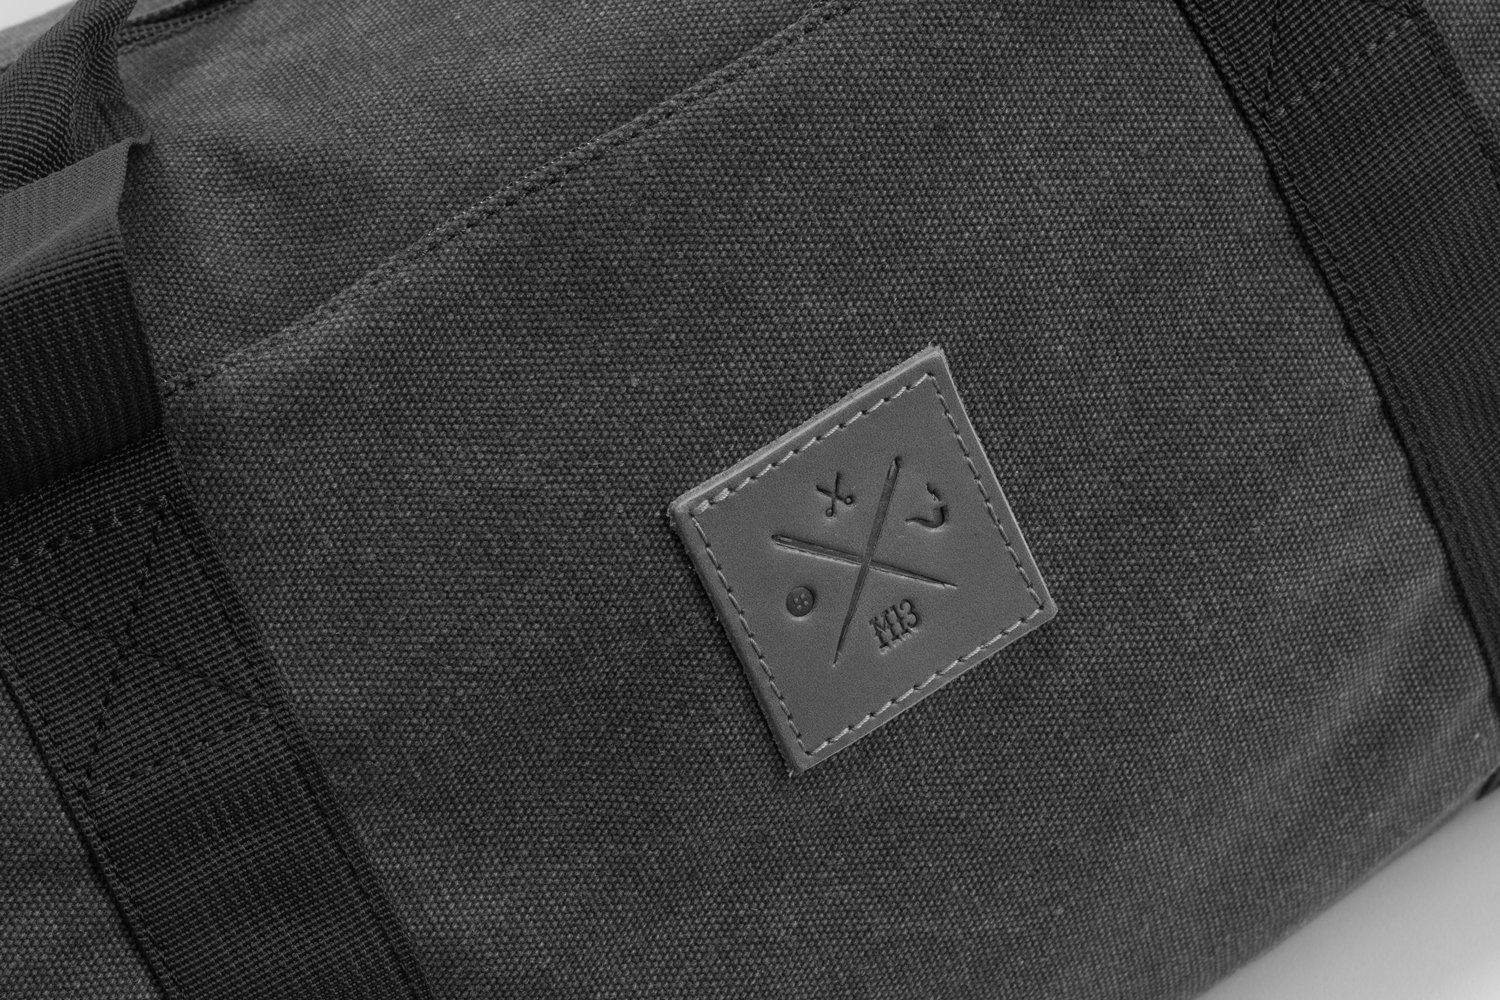 Manufaktur13 Sporttasche Canvas Barrel Bag Dark 24L Fassungsvermögen - Bag, Sporttasche, Grey Duffel